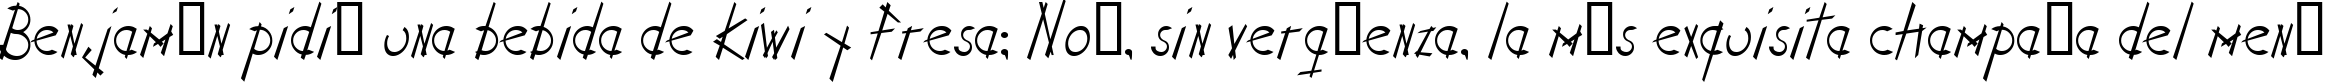 Пример написания шрифтом Stix n Stonz текста на испанском